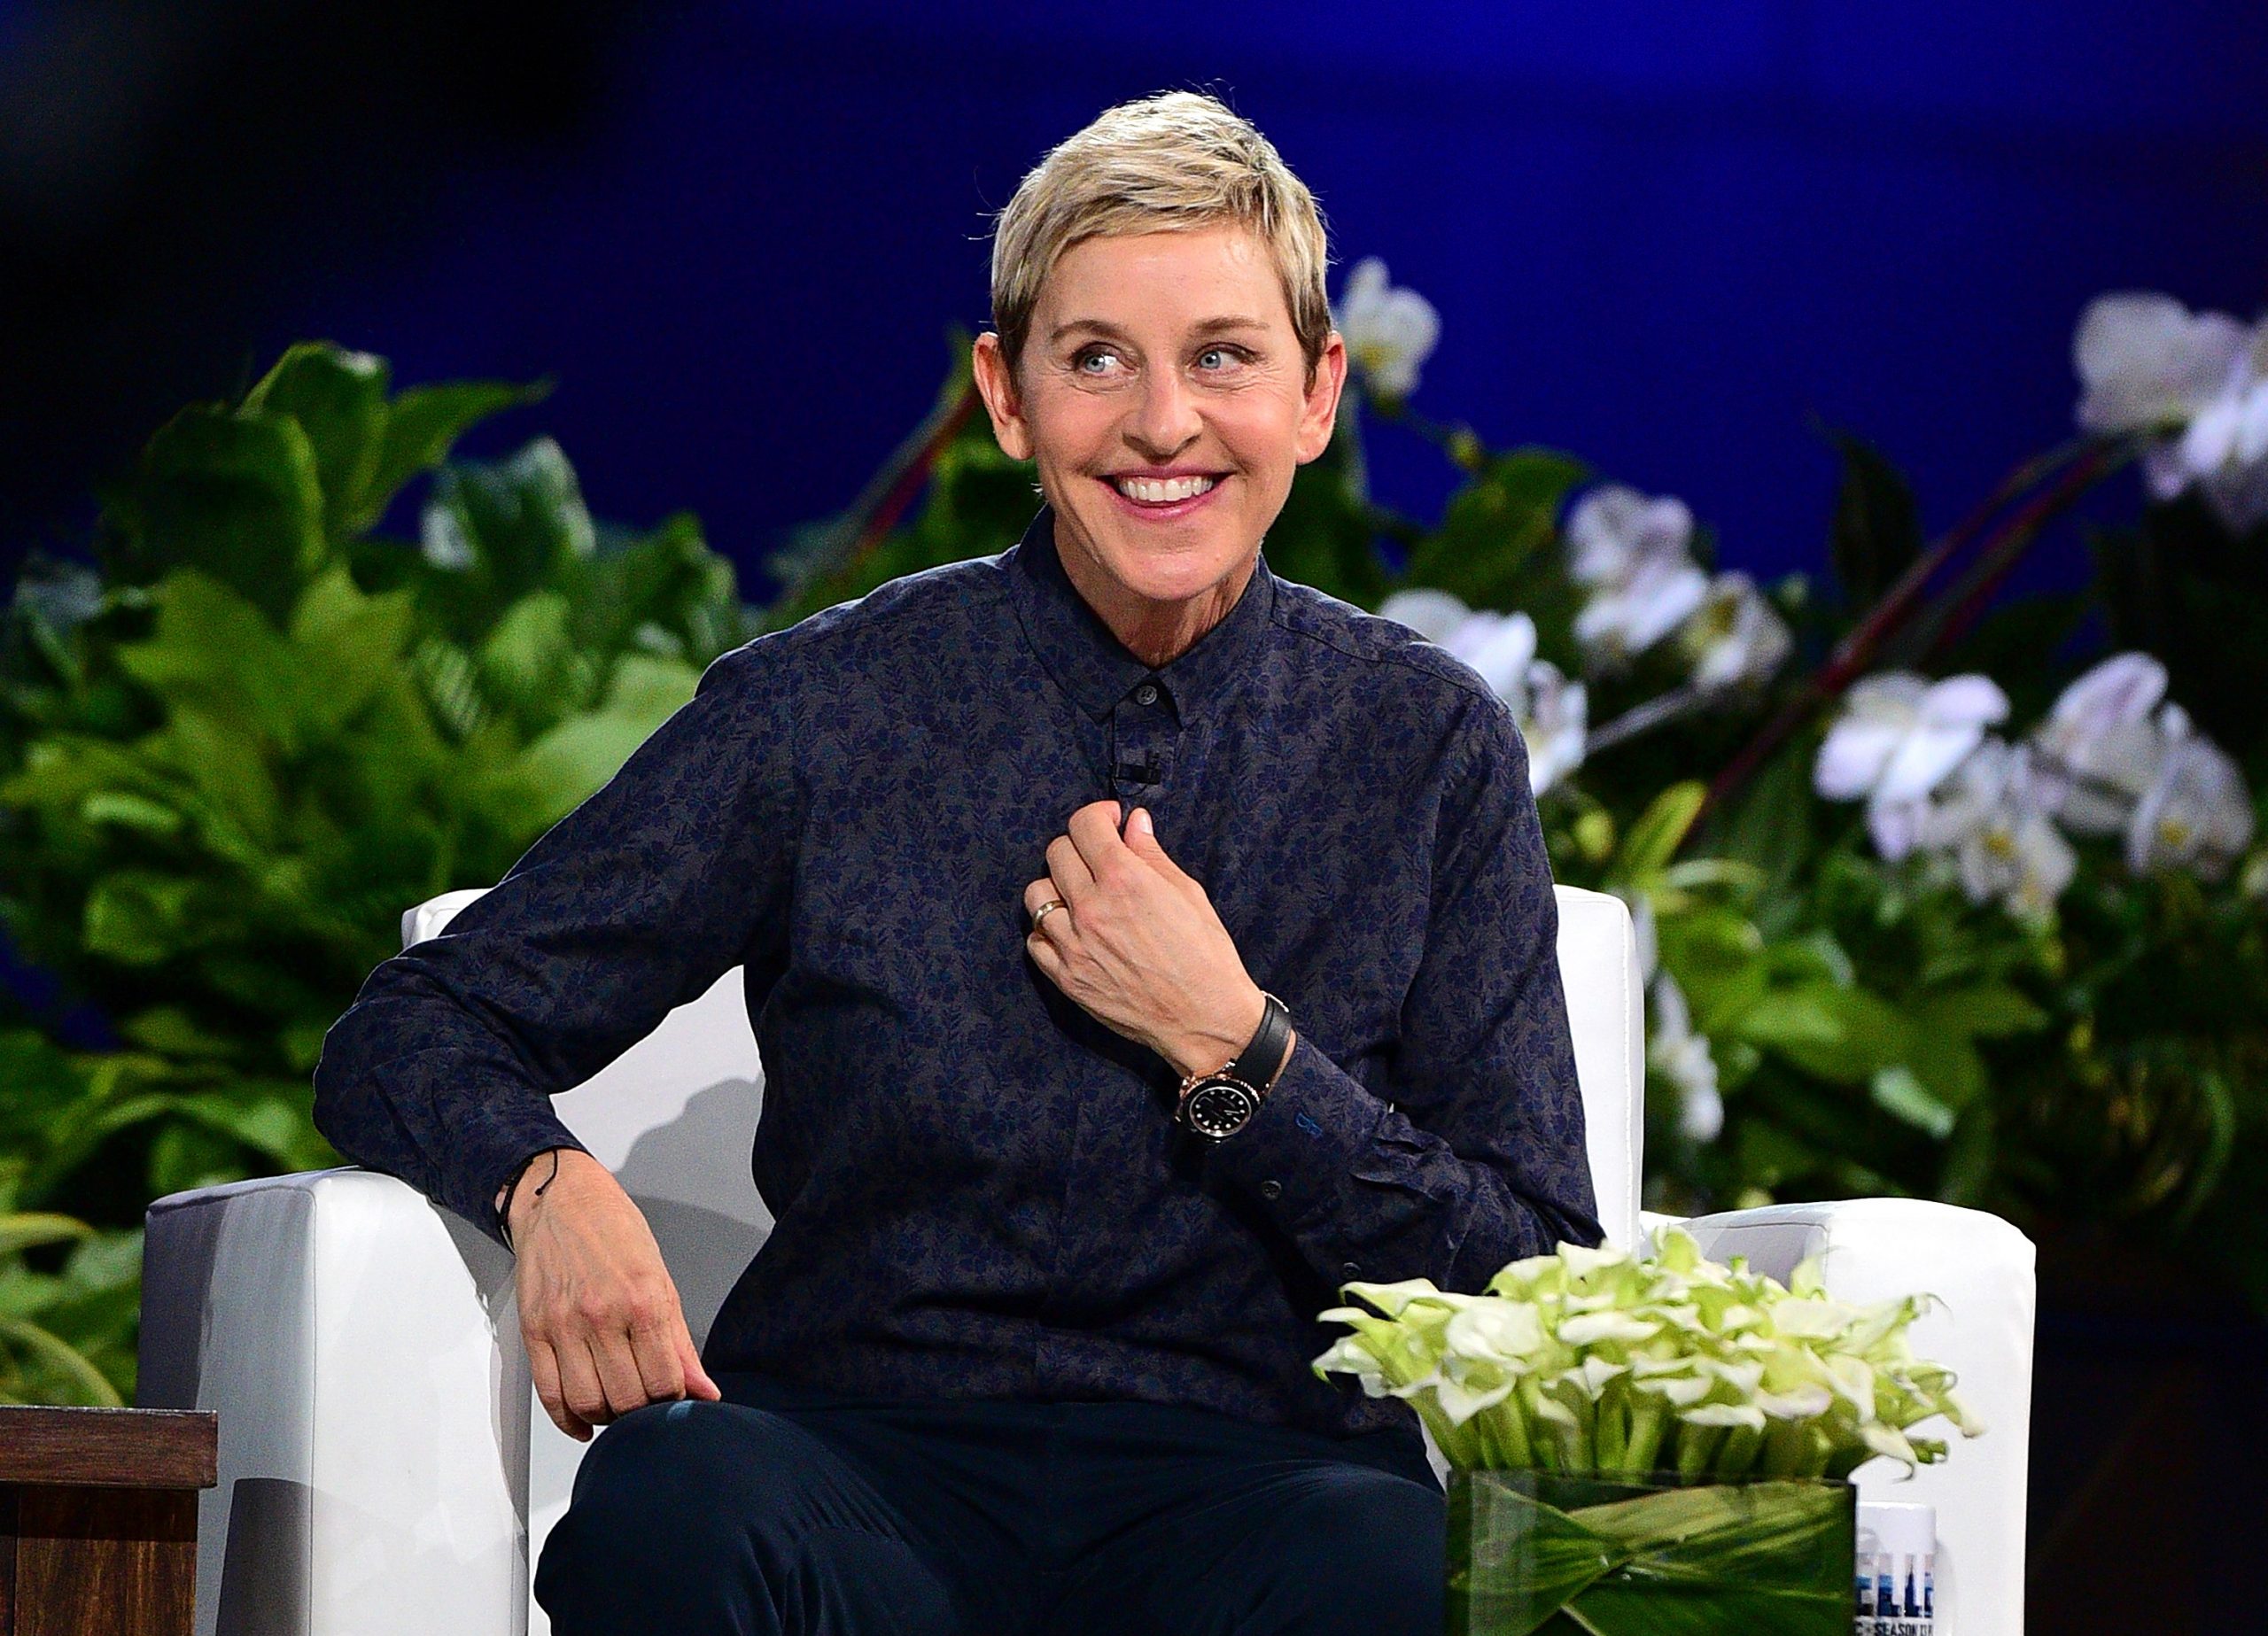 ¿El fin de una era? Ellen DeGeneres se despide de su programa luego de 19 temporadas